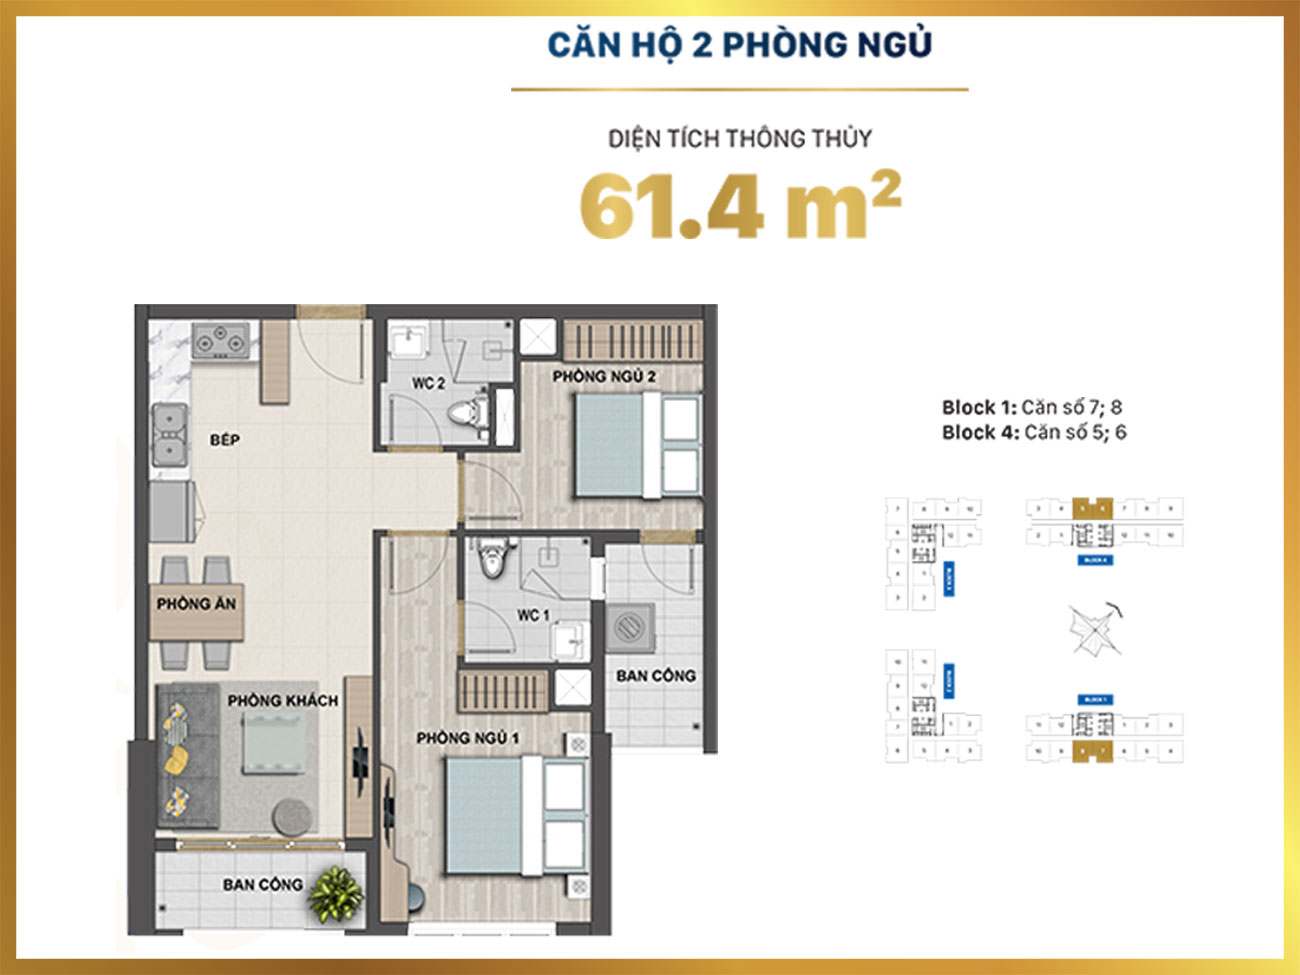 Thiết kế căn hộ 2PN - diện tích 61.4m2 dự án Victoria Village Quận 2